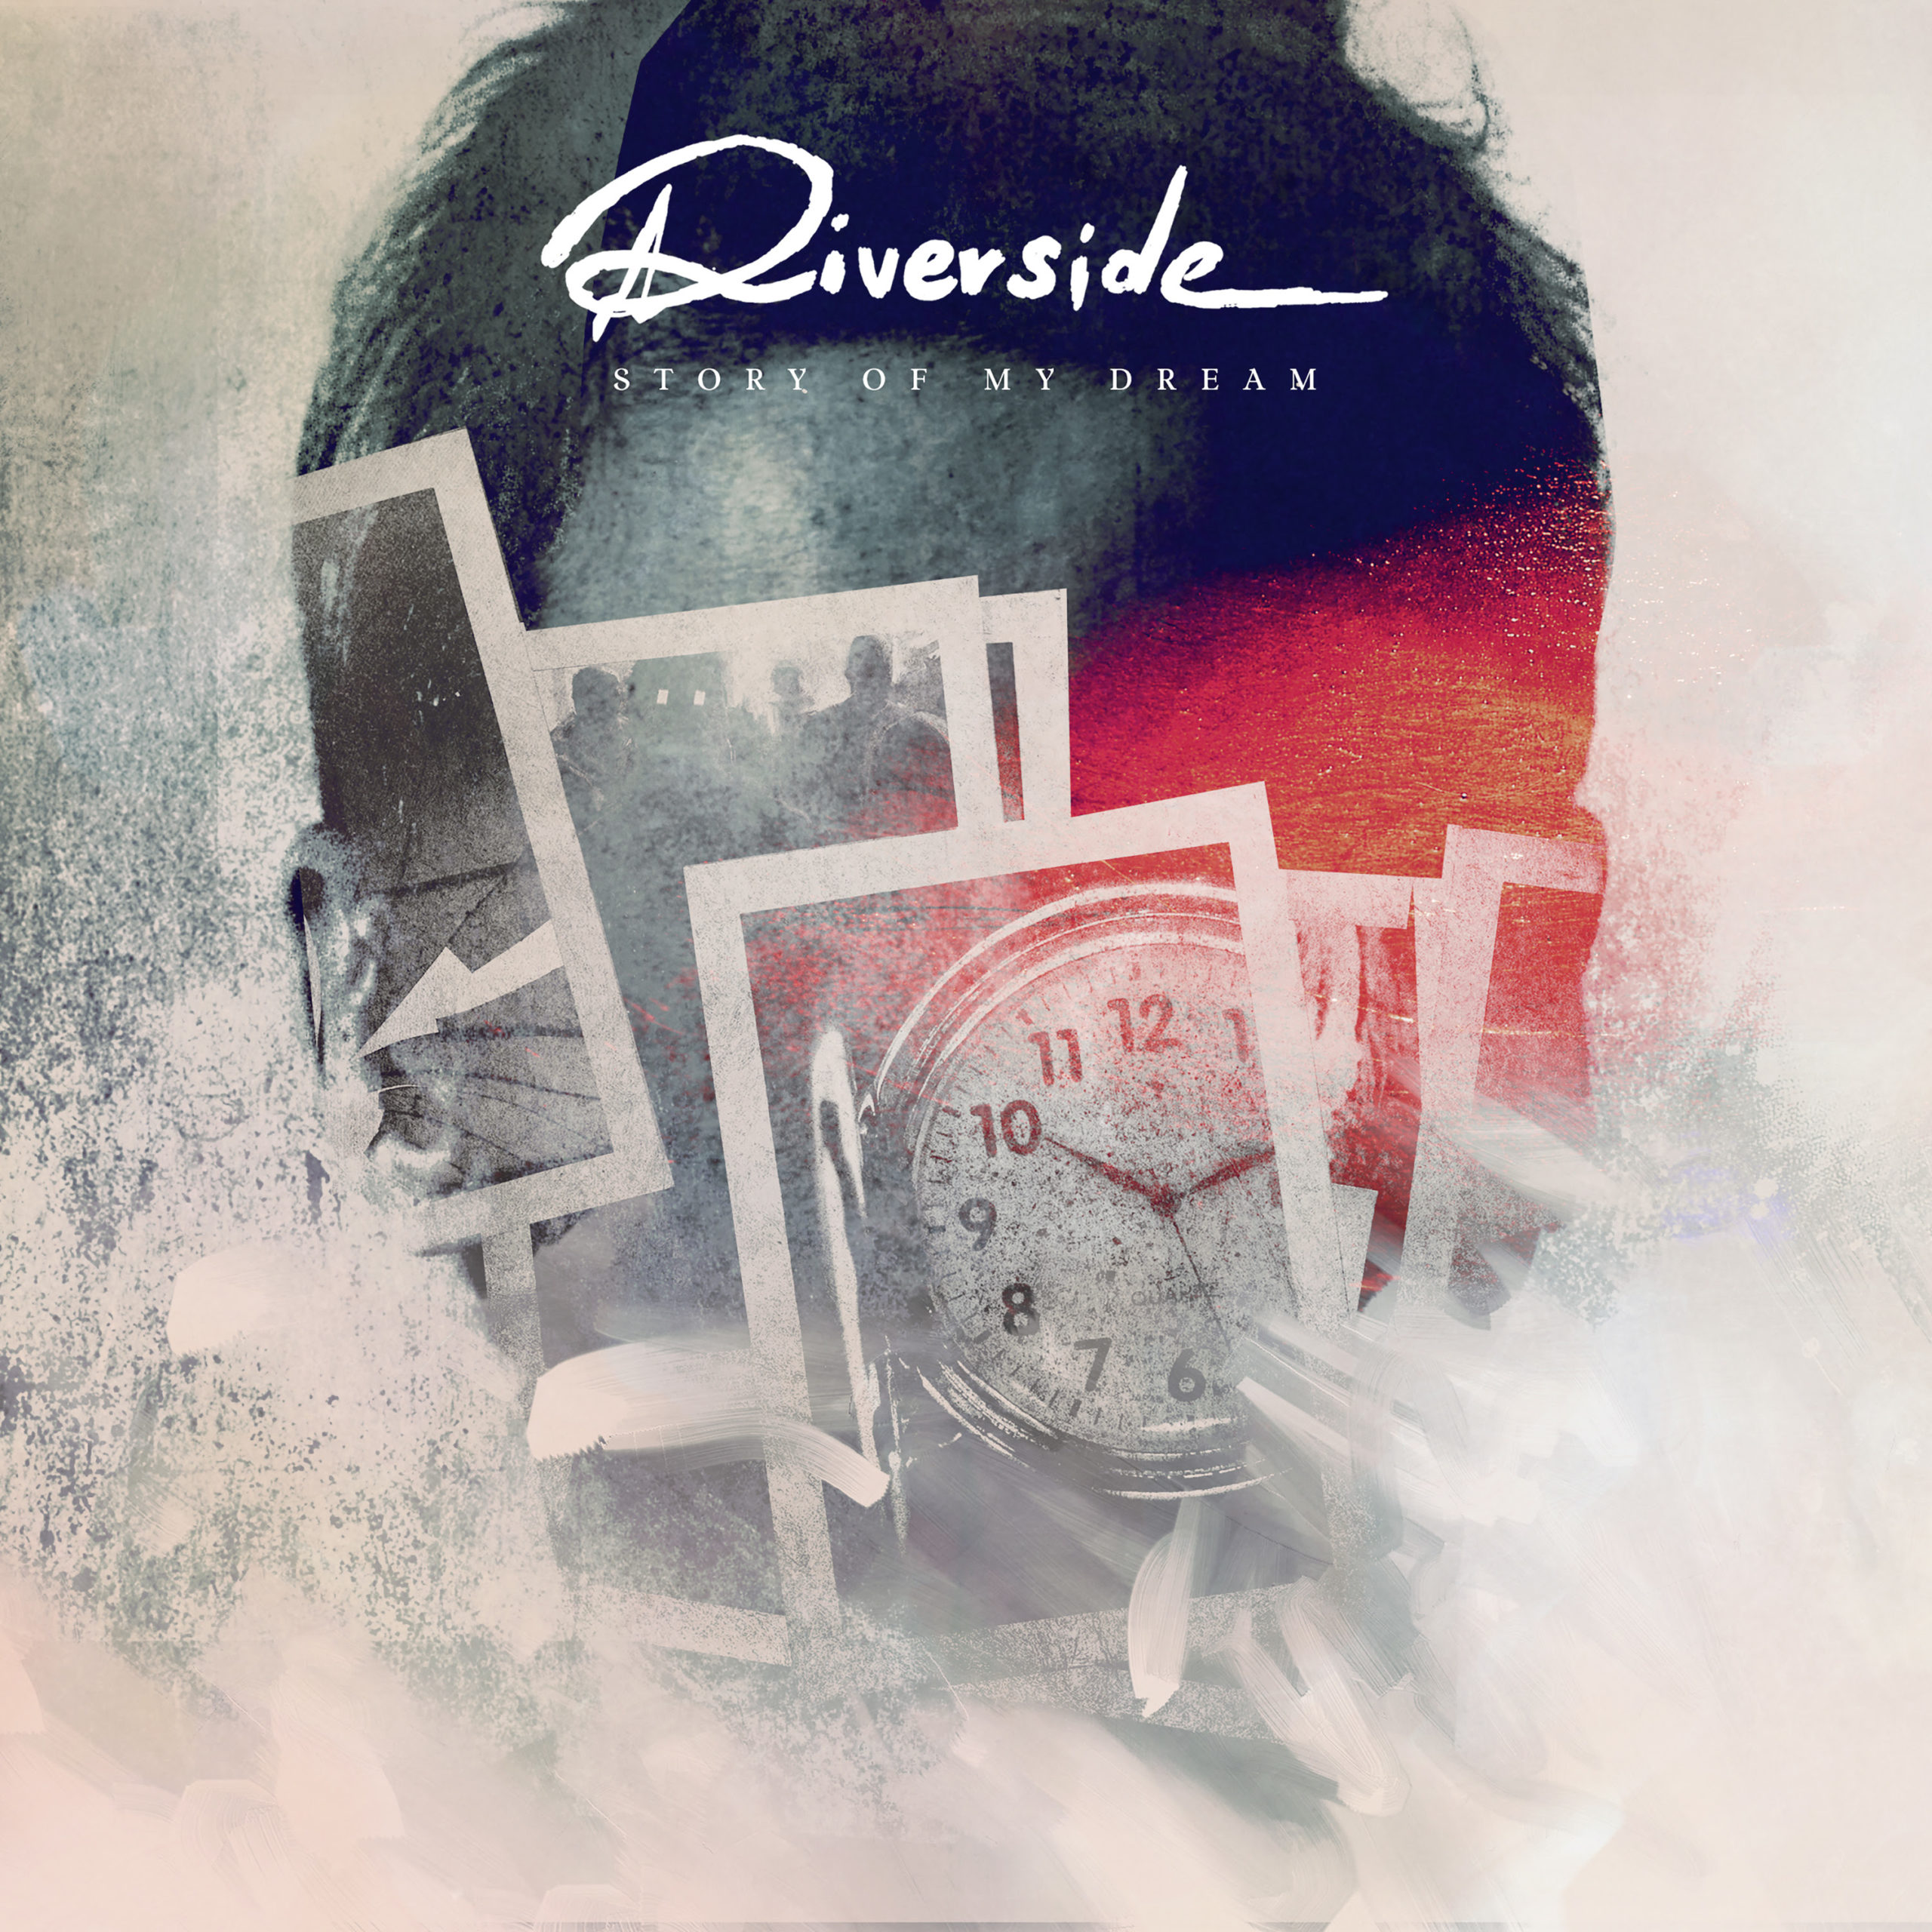 RIVERSIDE: Estrena un nuevo single y vídeo, “Story of My Dream”